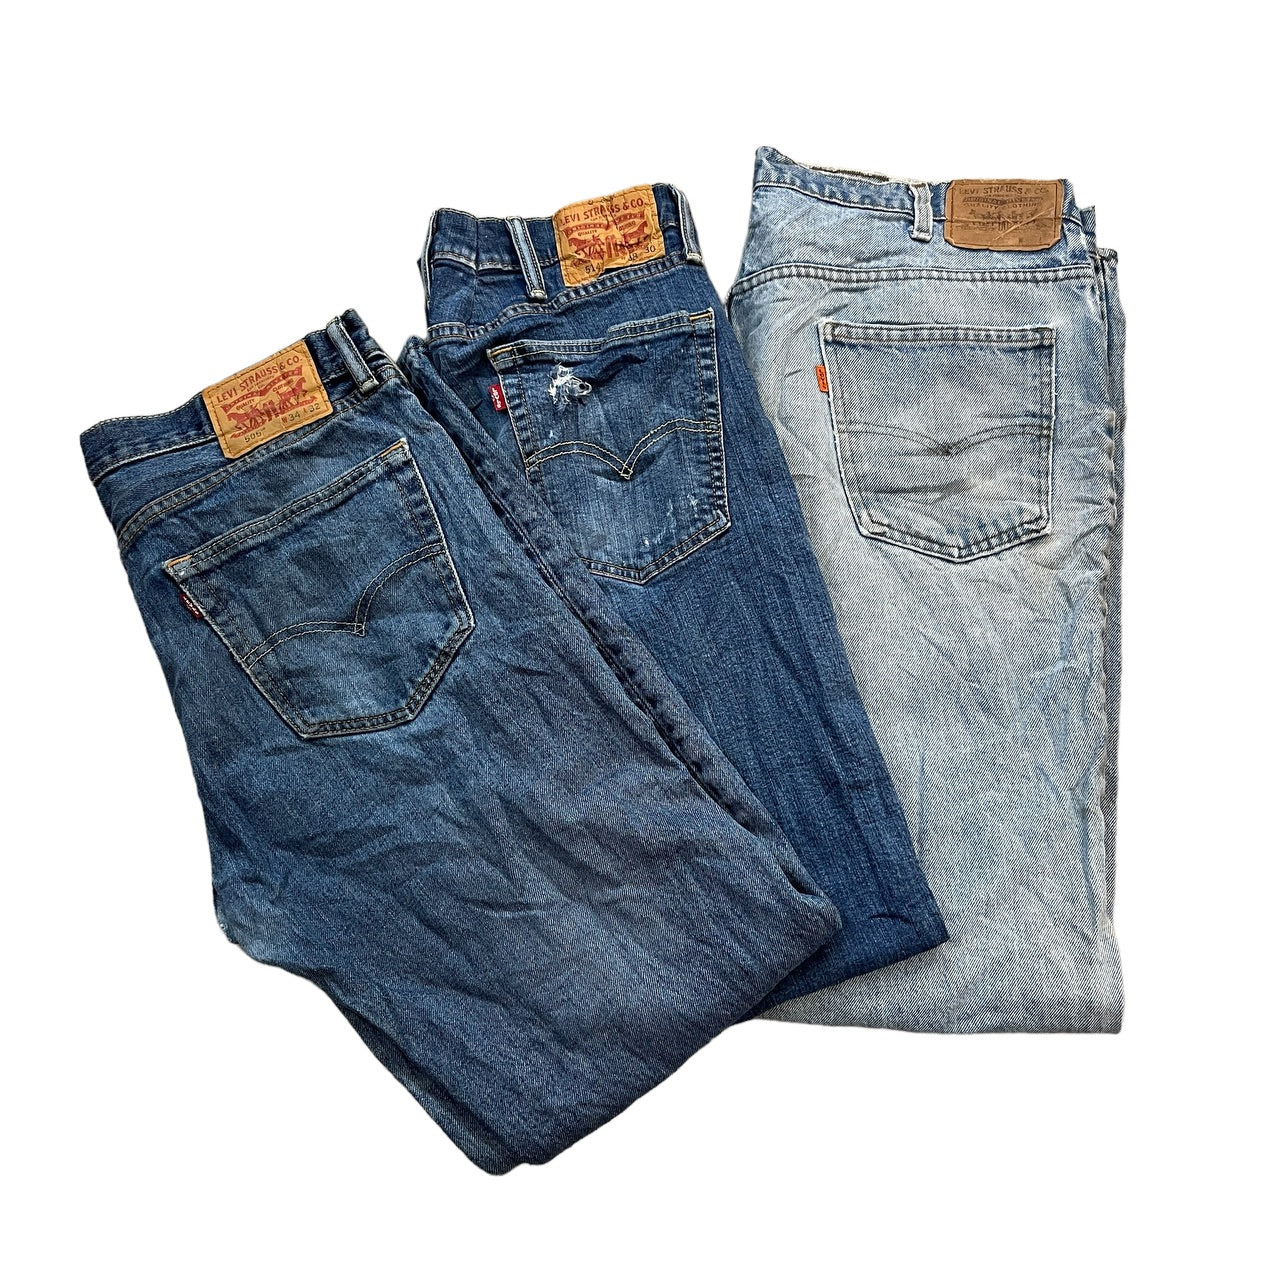 Wholesale Levi’s Jeans Mix-100 pounds